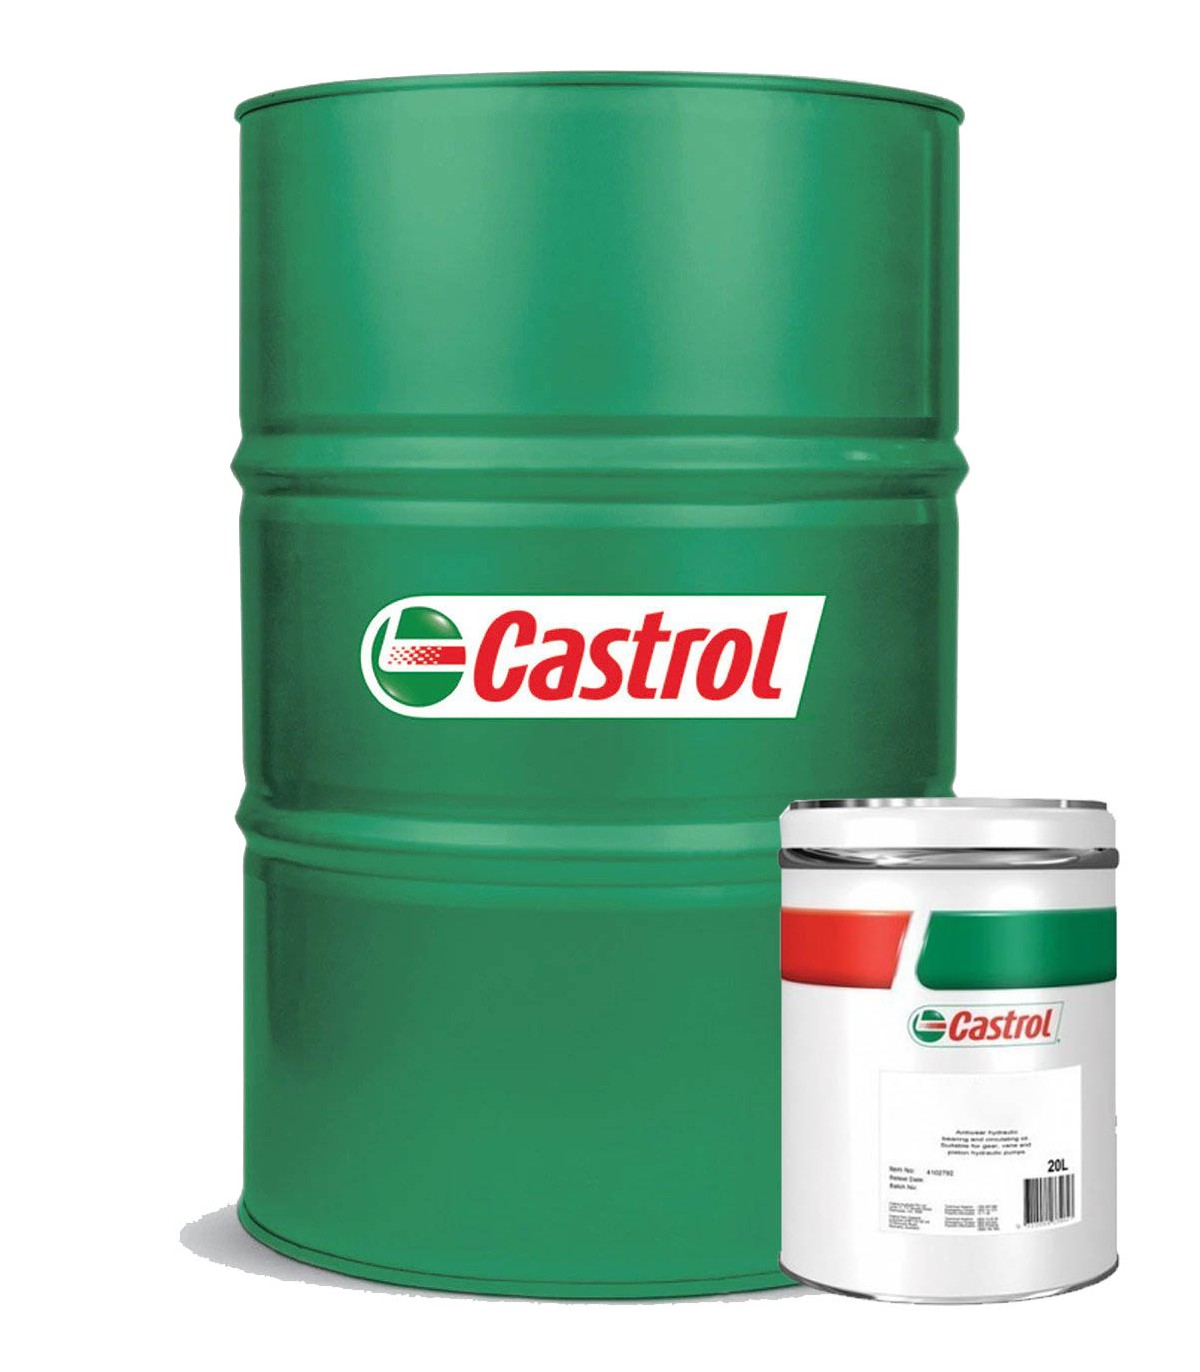 Comprar Castrol Vecton Fuel Saver 5W30 E6/E9 